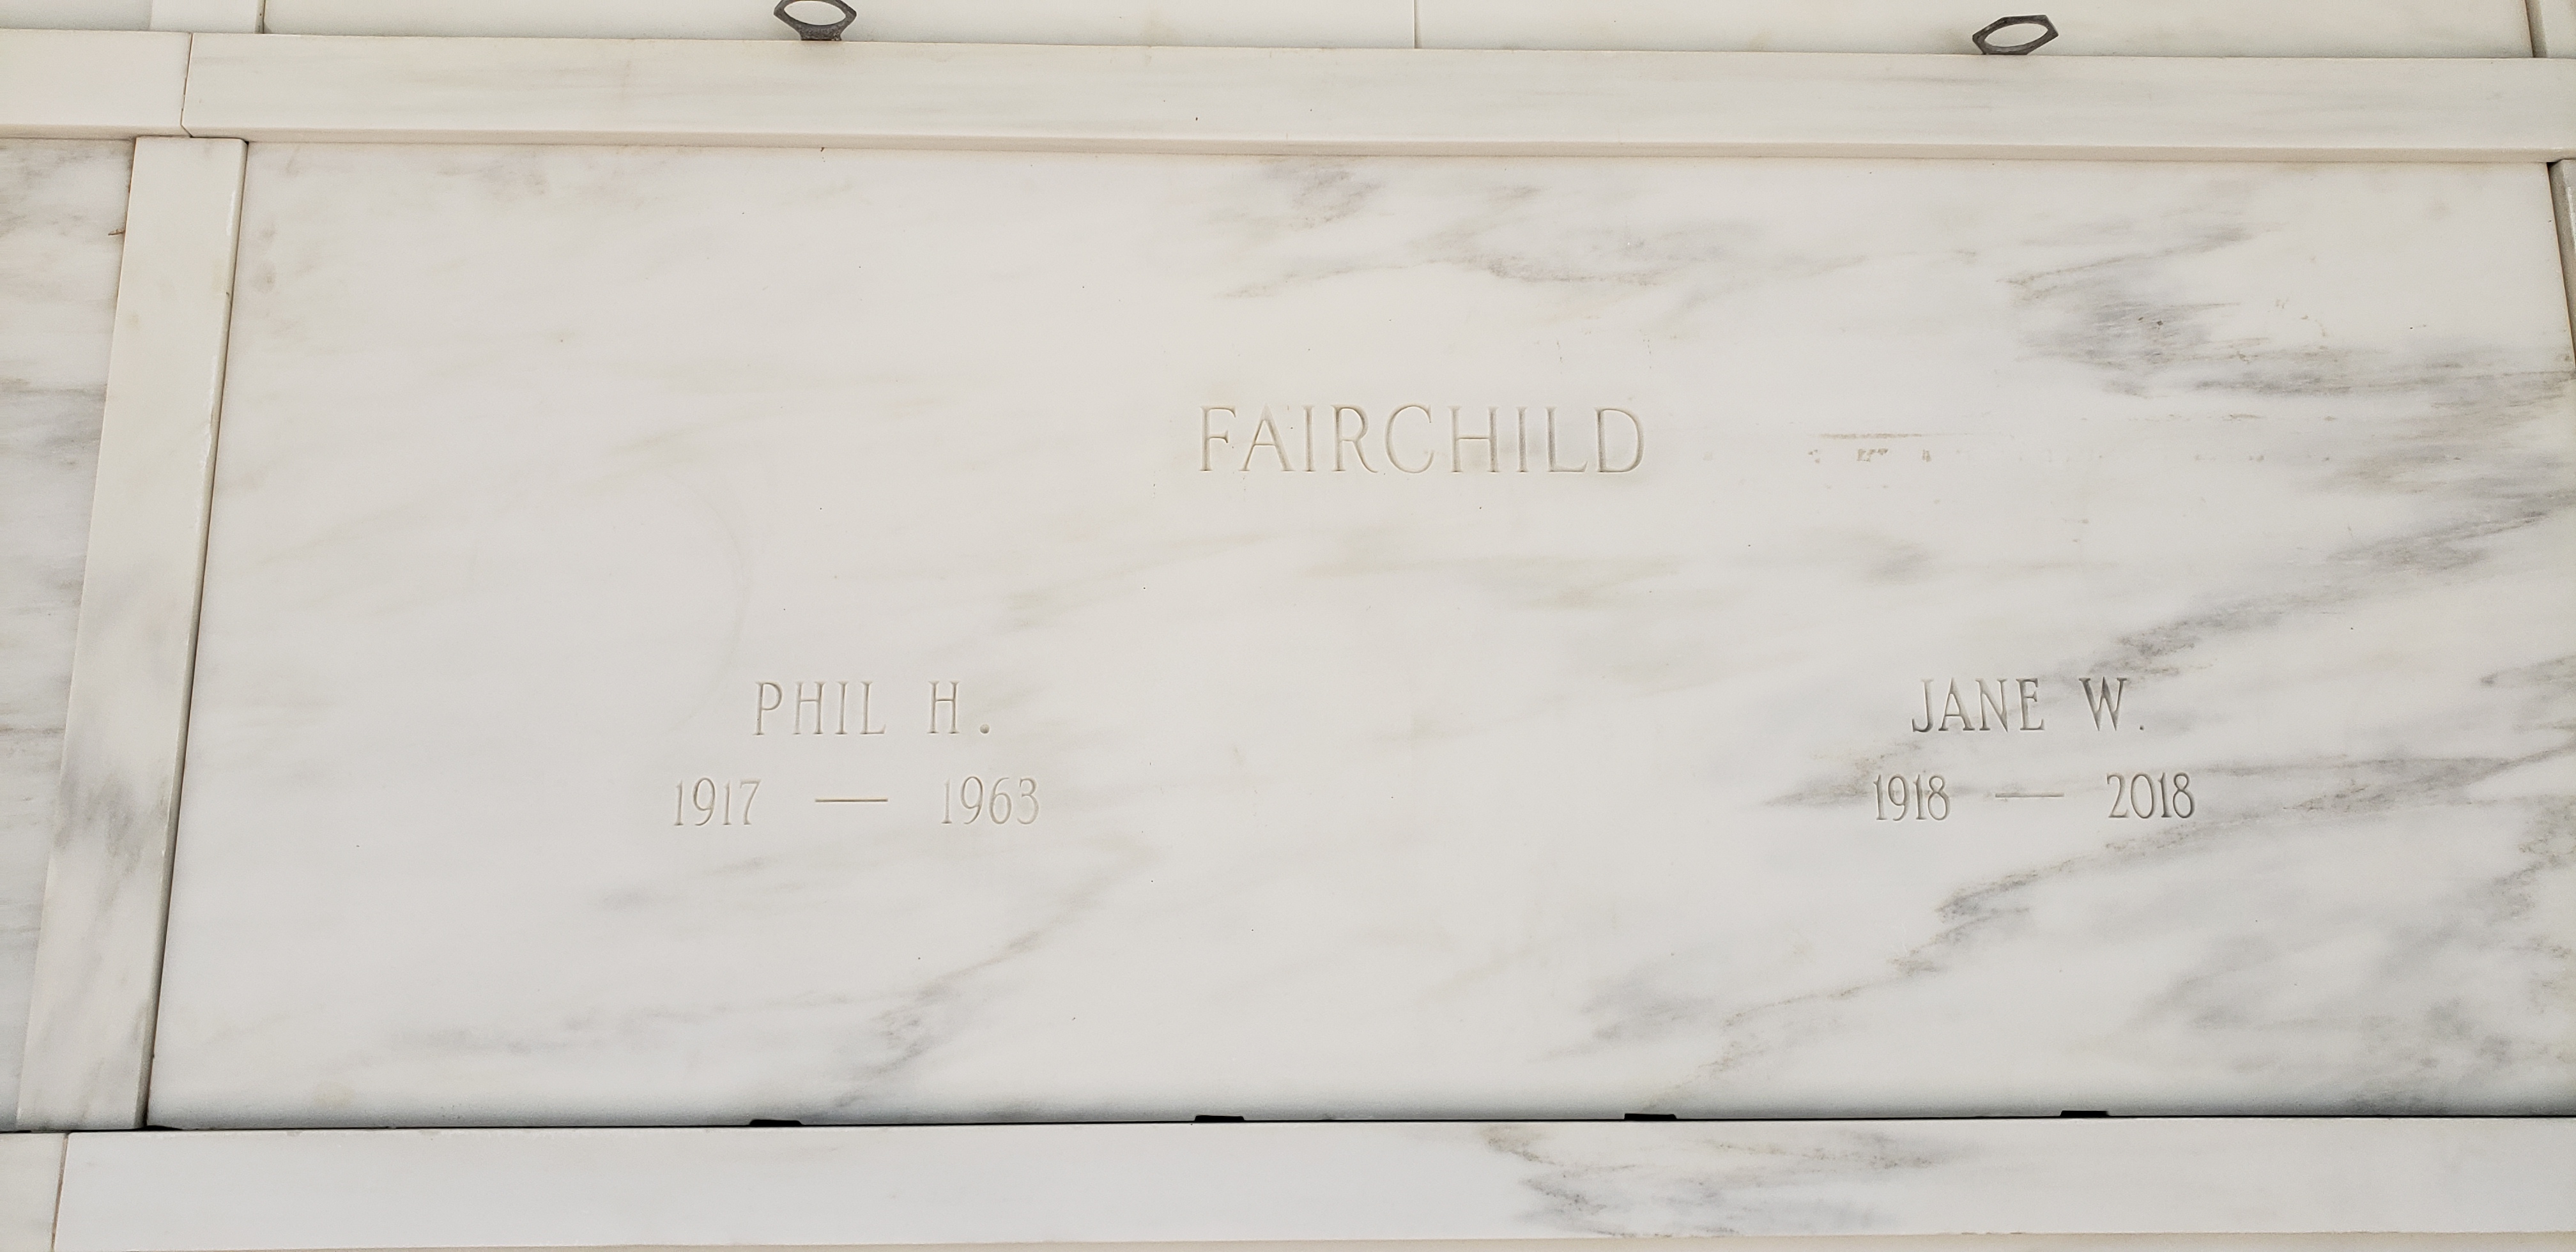 Phil H Fairchild